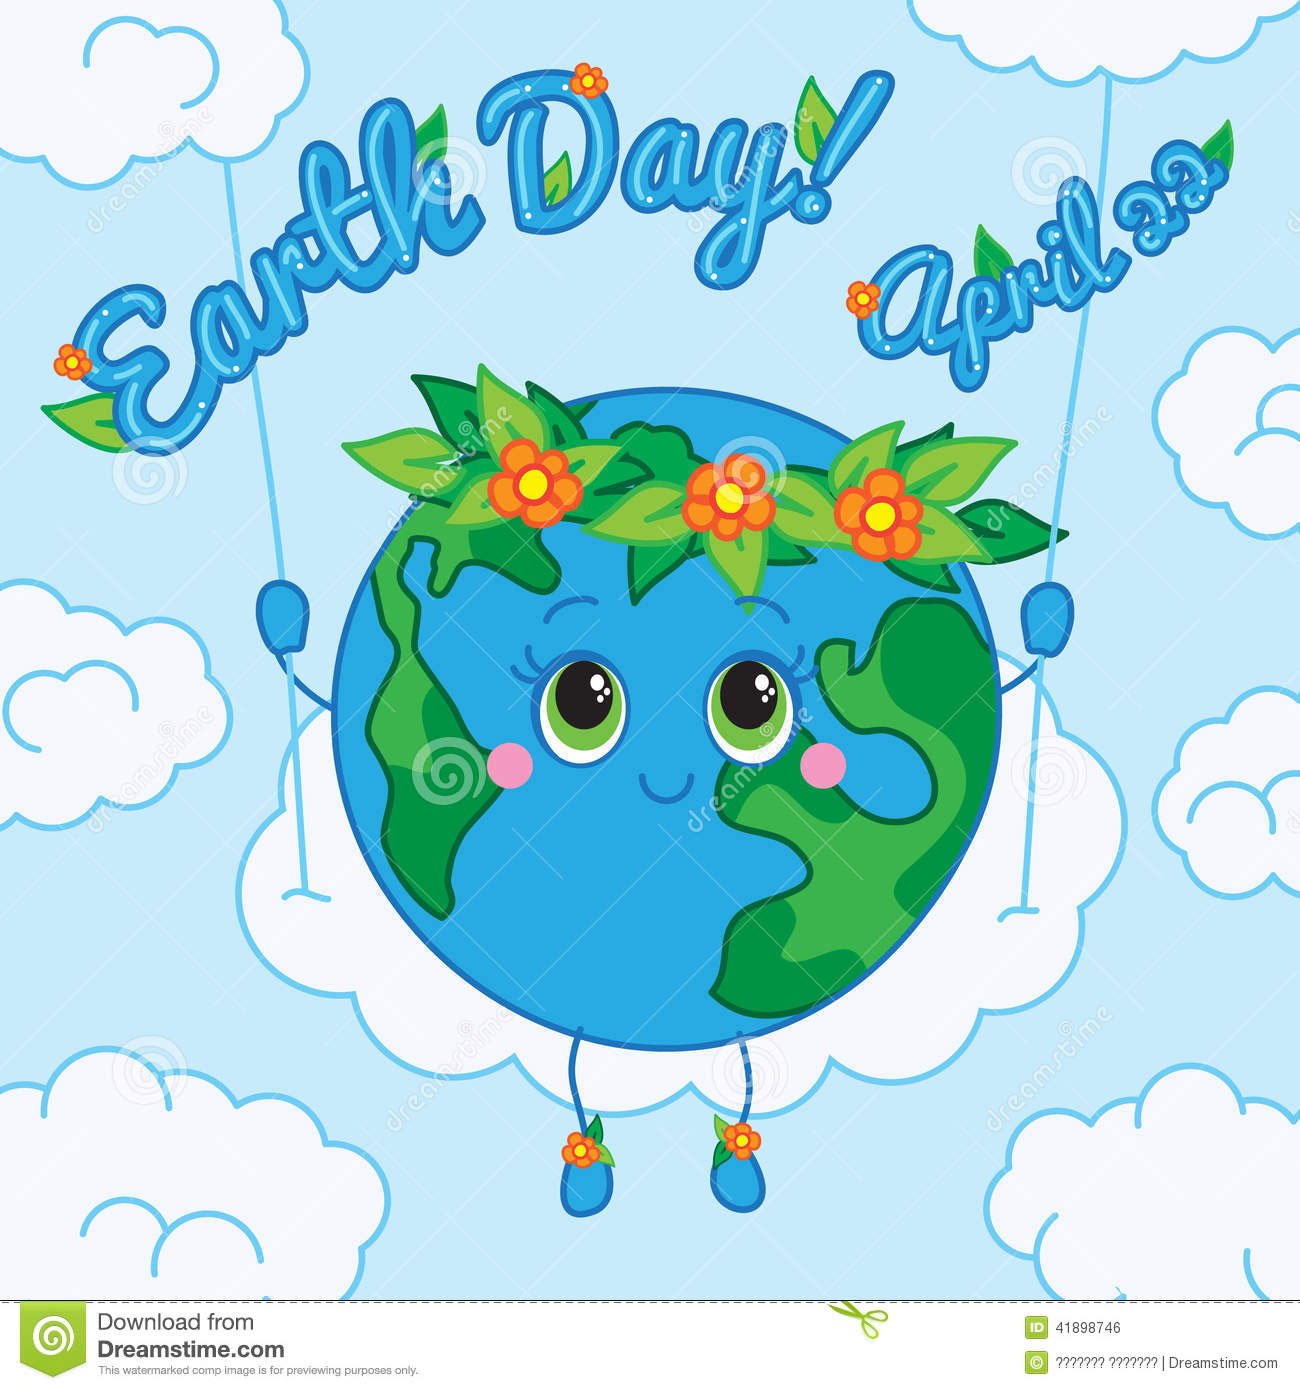 Плакат ко дню земли. День земли. Международный день земли плакат. Иллюстрации ко Дню земли. День земли рисунок.